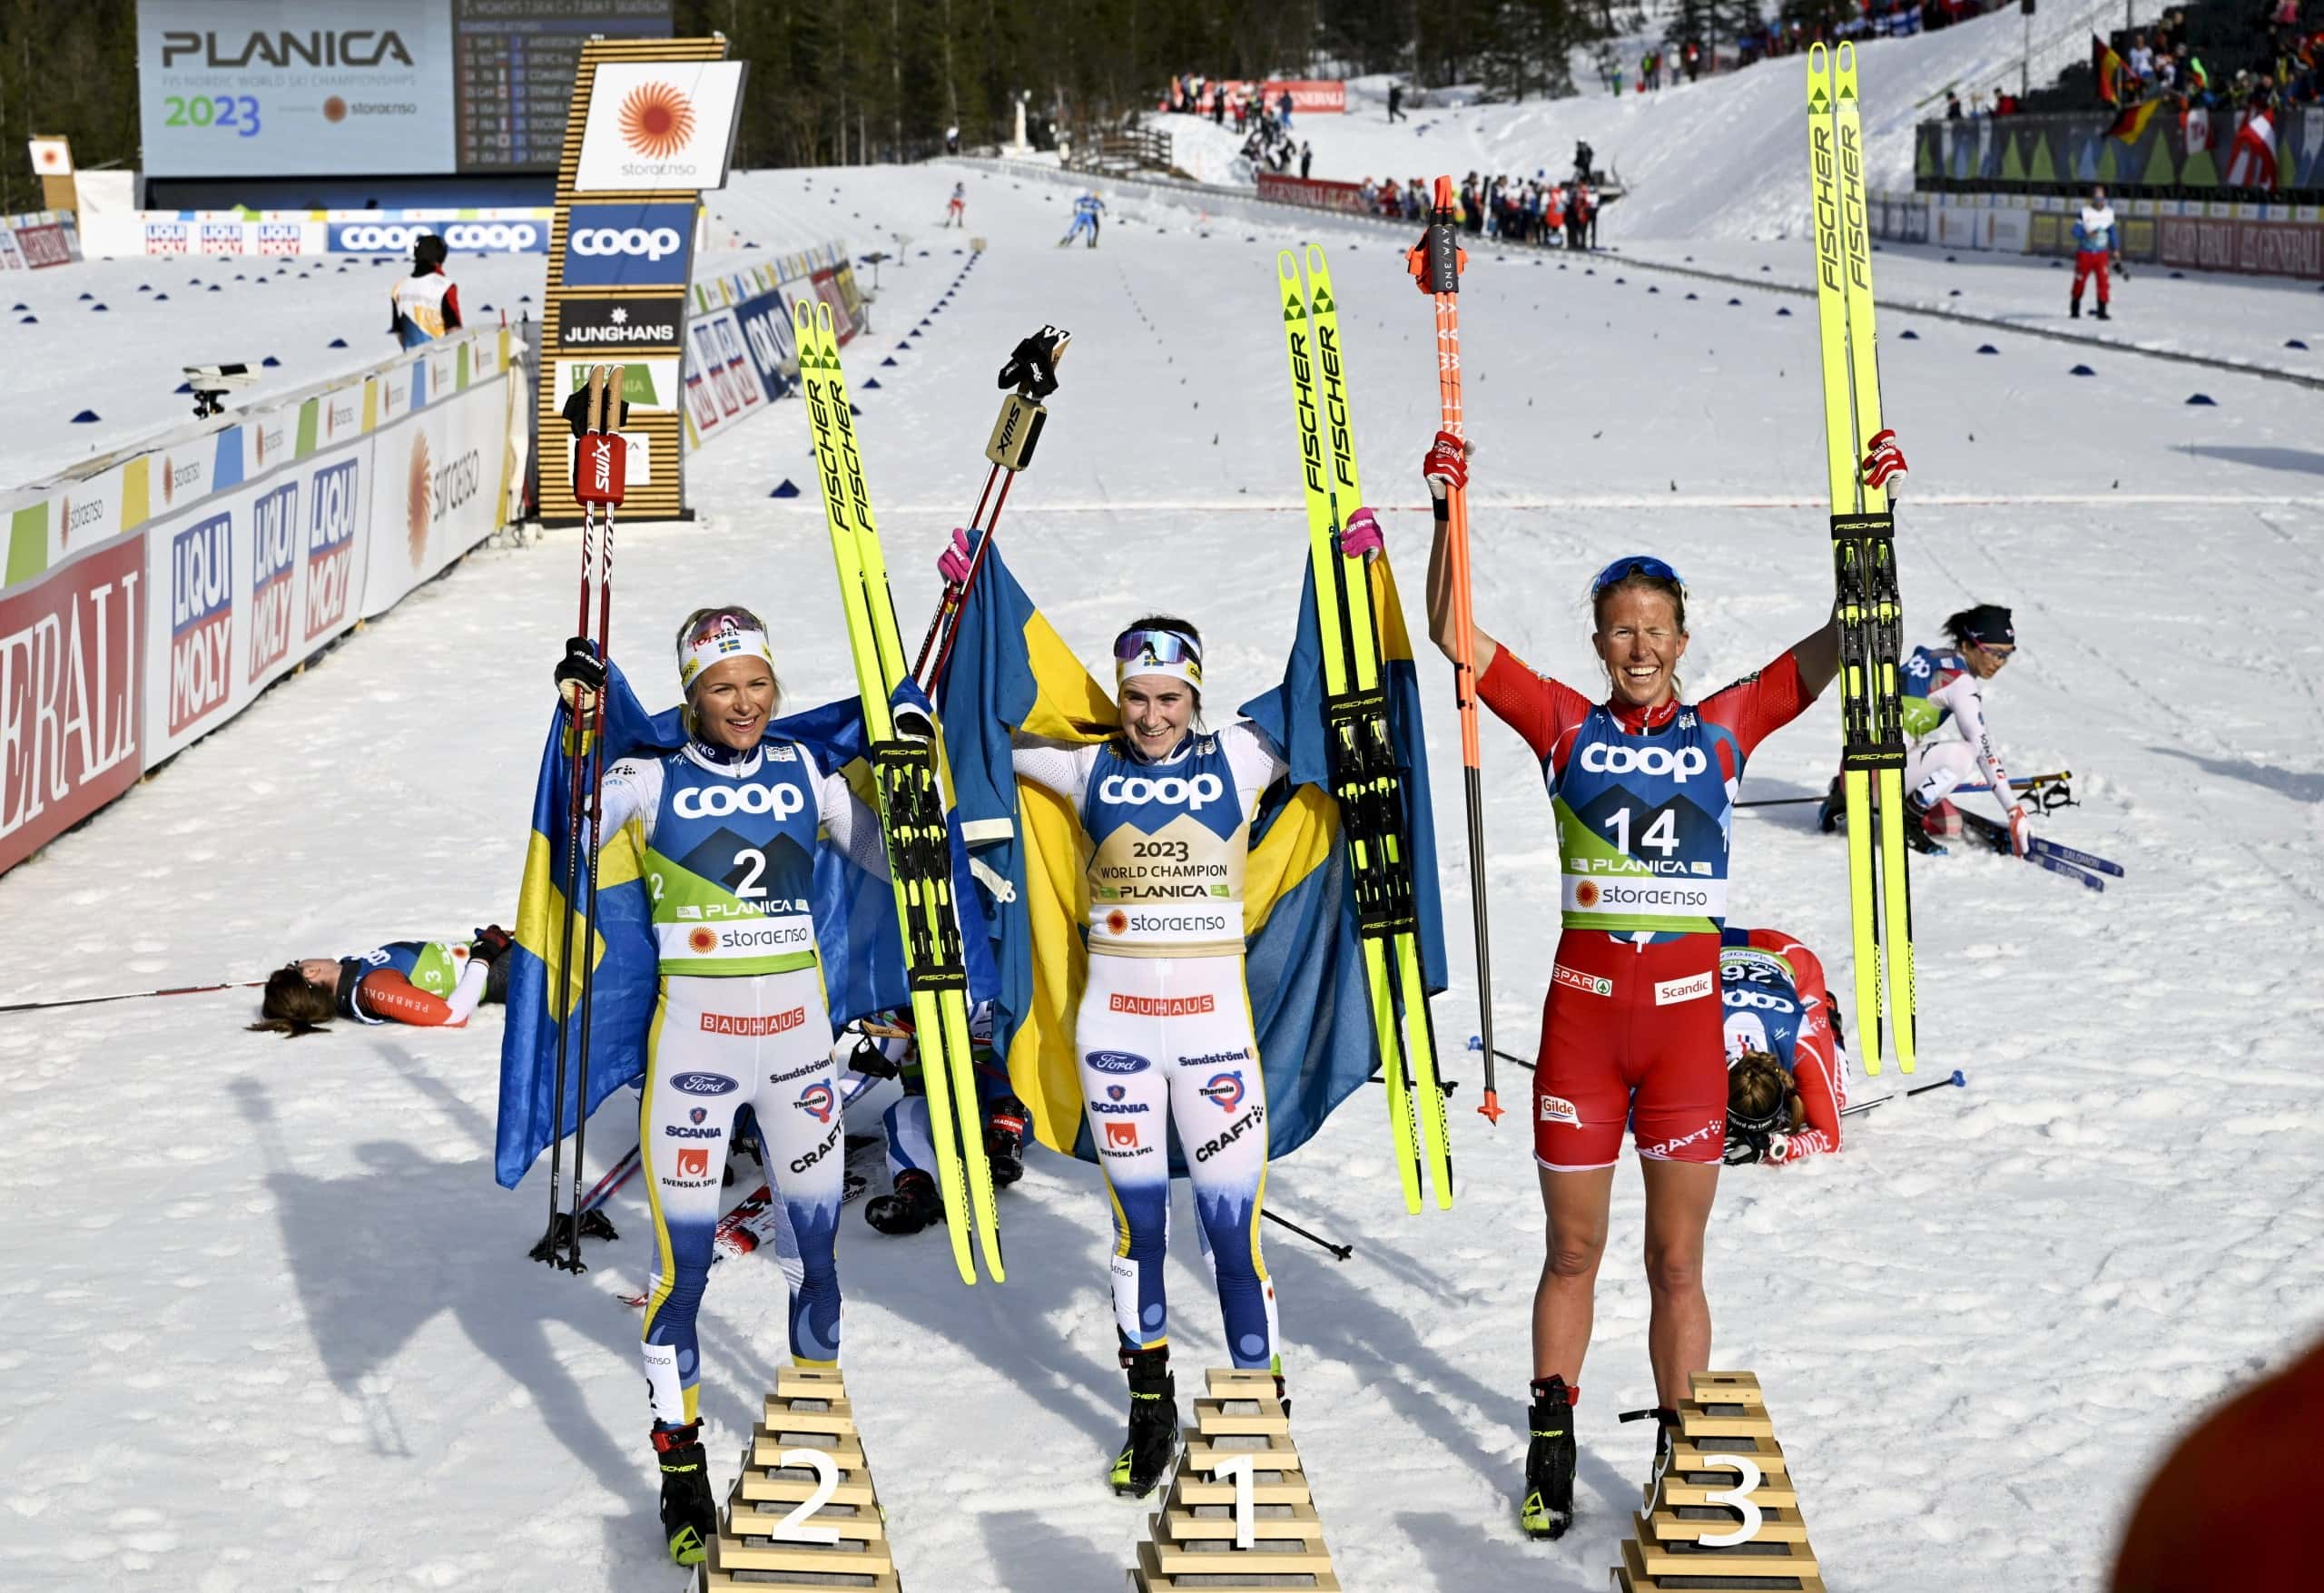 Nordische Ski-WM 2023 Planica Kader, Ergebnisse and Infos